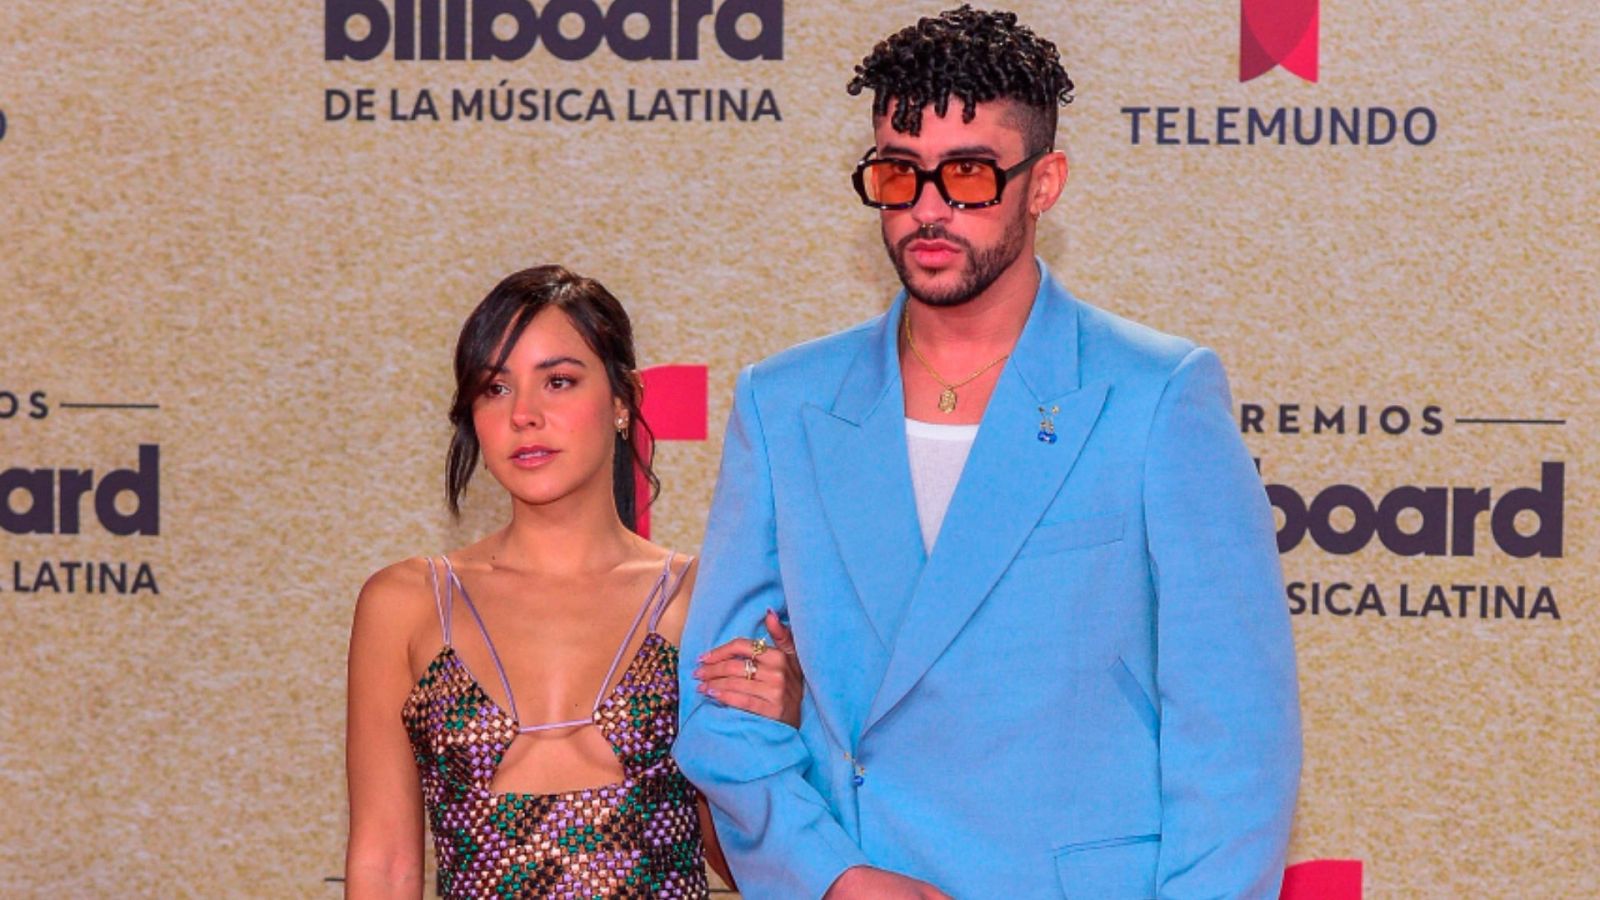 El cantante puertorriqueño Bad Bunny y su novia Gabriela Berlingeri posando el jueves 23 de septiembre de 2021 en la alfombra roja de los Premios Billboard de la Música Latina en Miami, Florida (EE.UU.).